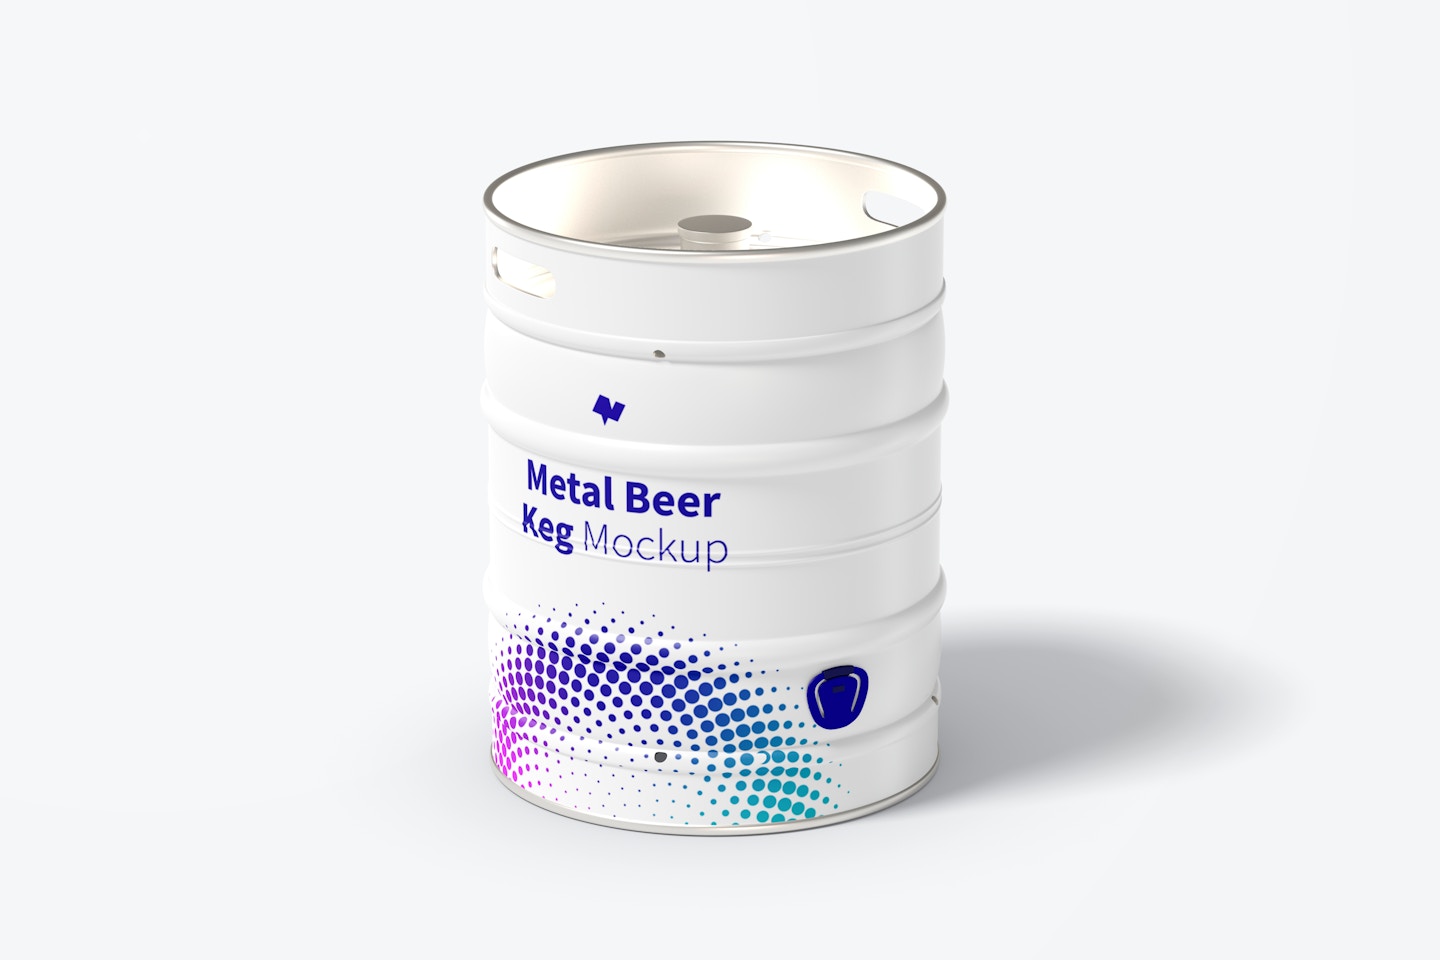 Metal Beer Keg Mockup